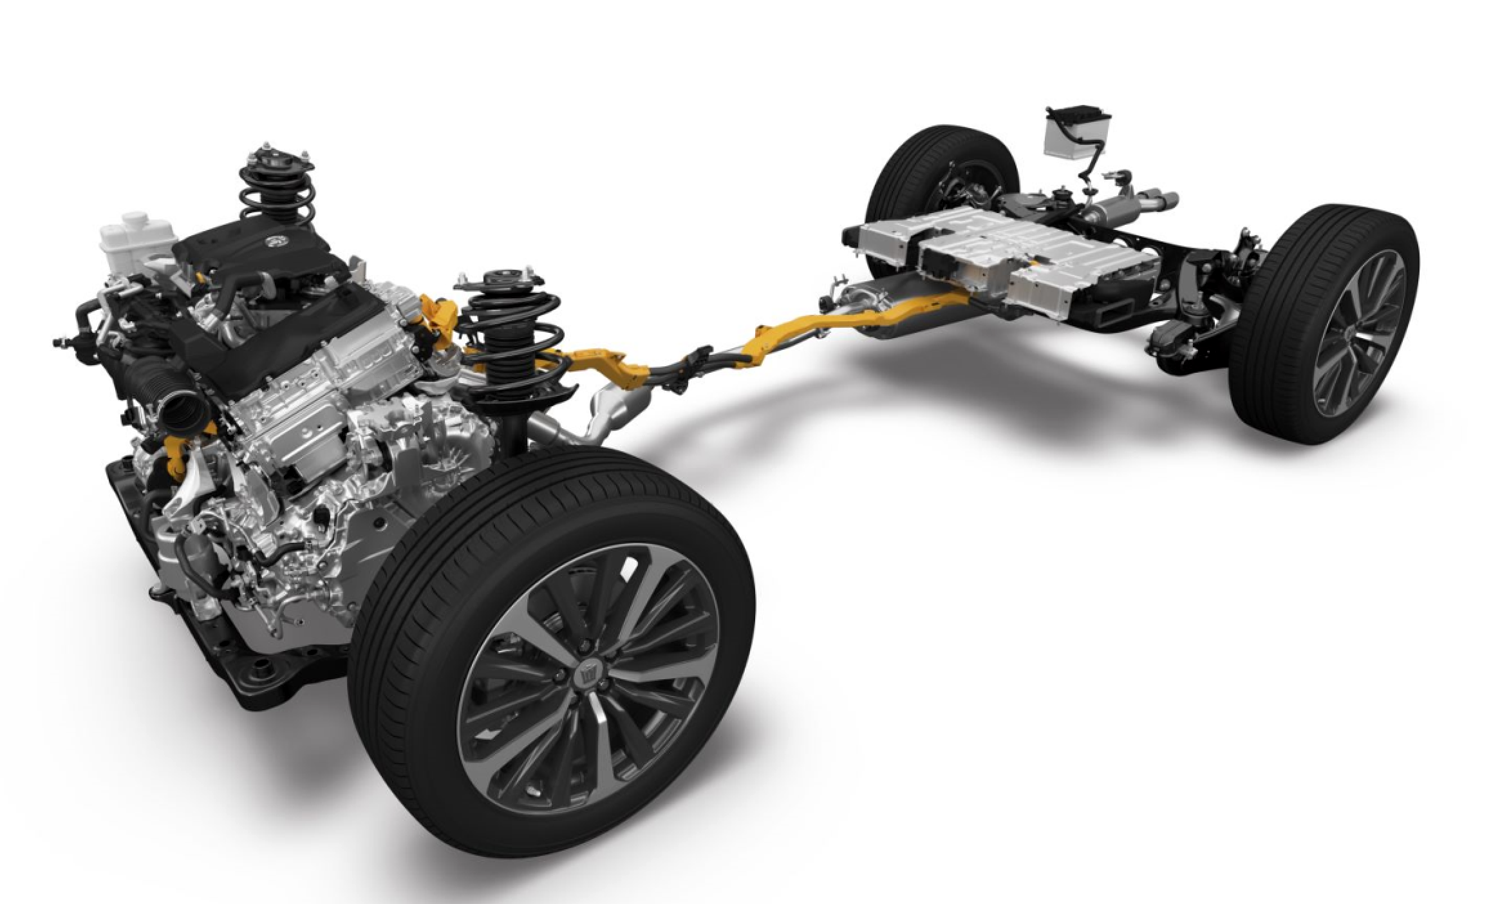 丰田油电混合动力车报价_丰田油电混合型汽车爬坡度_丰田油电混合动力车型